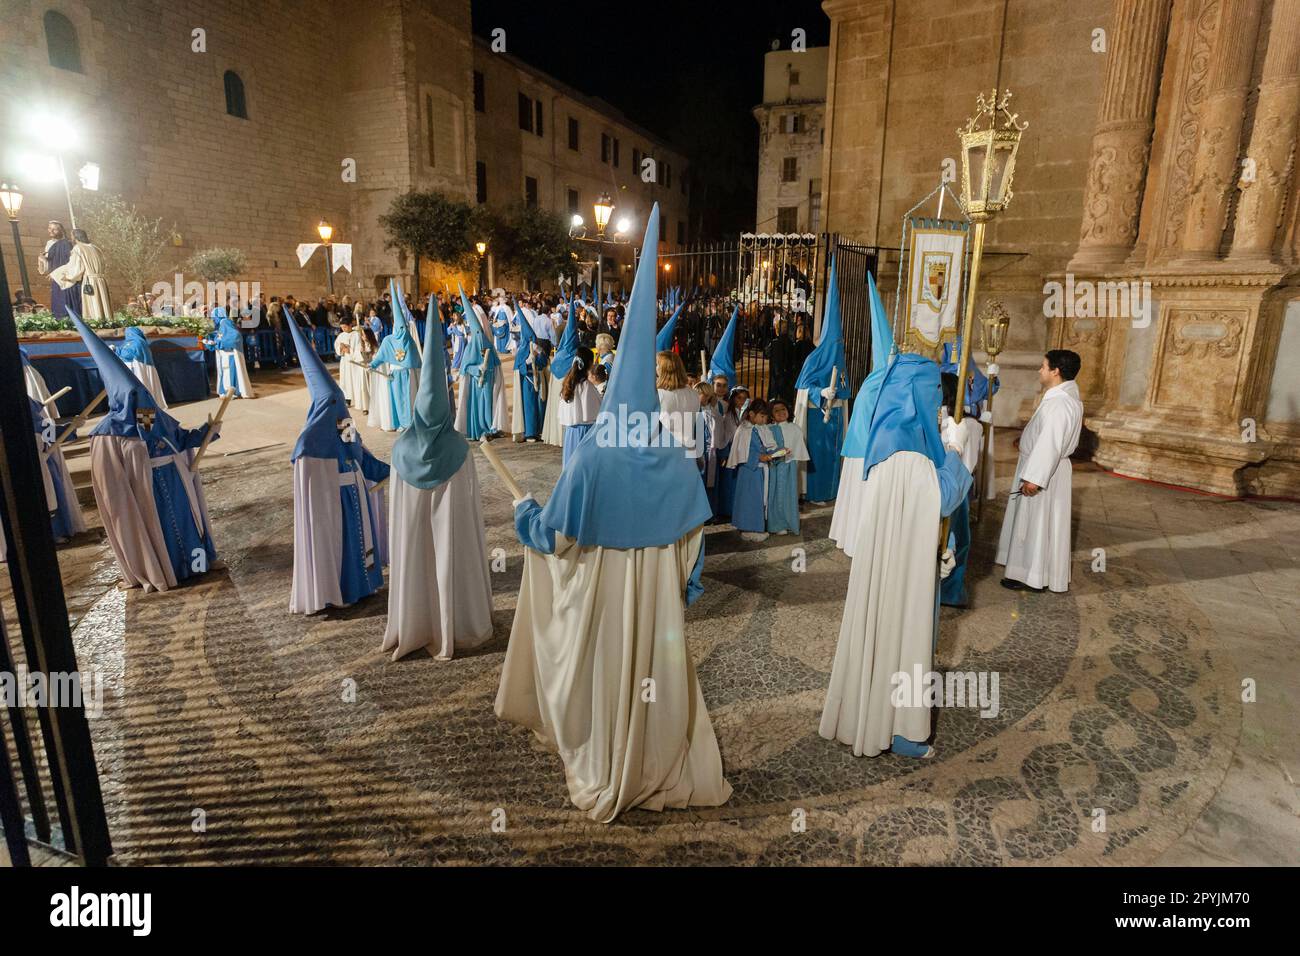 cofradias entrando en la catedral, procesion de jueves santo, Palma, Mallorca, Islas Baleares,  España Stock Photo